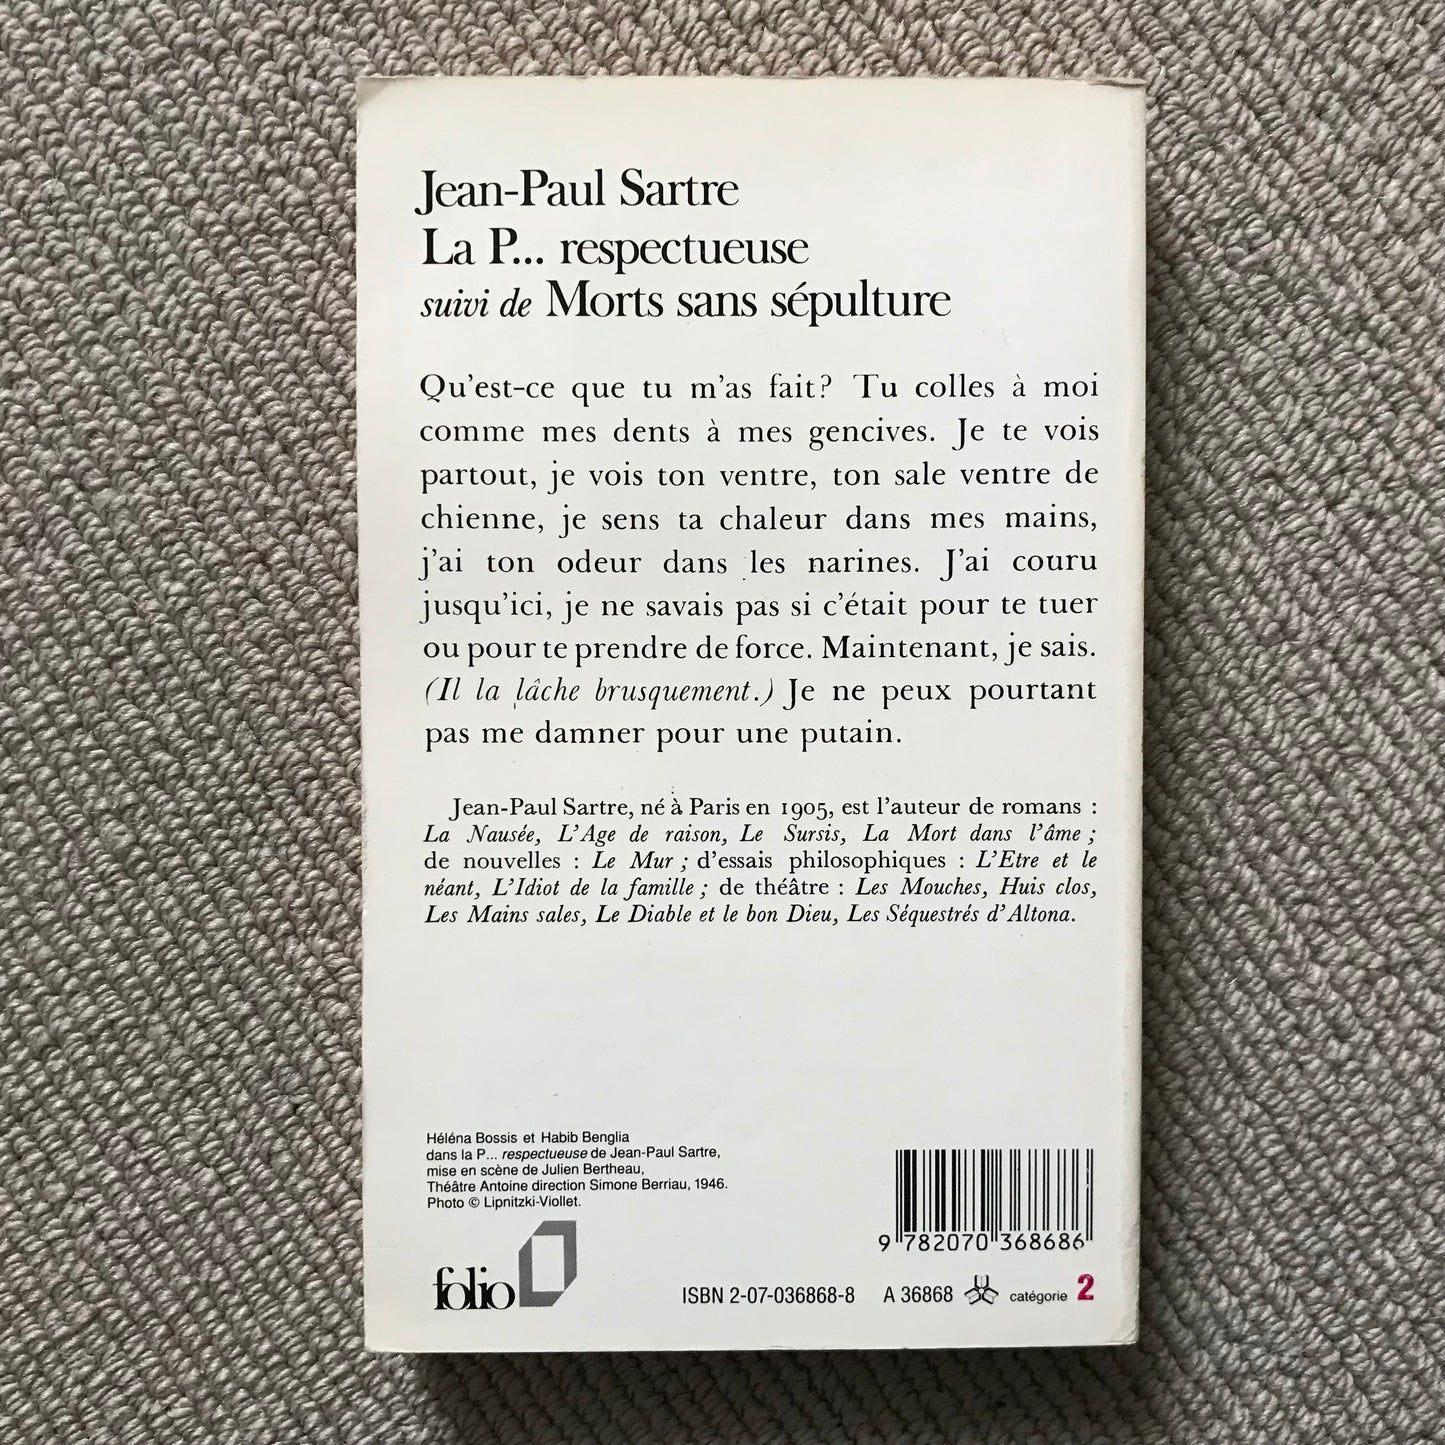 Sartre, Jean-Paul - La P… respectueuse & Morts sans sépulture